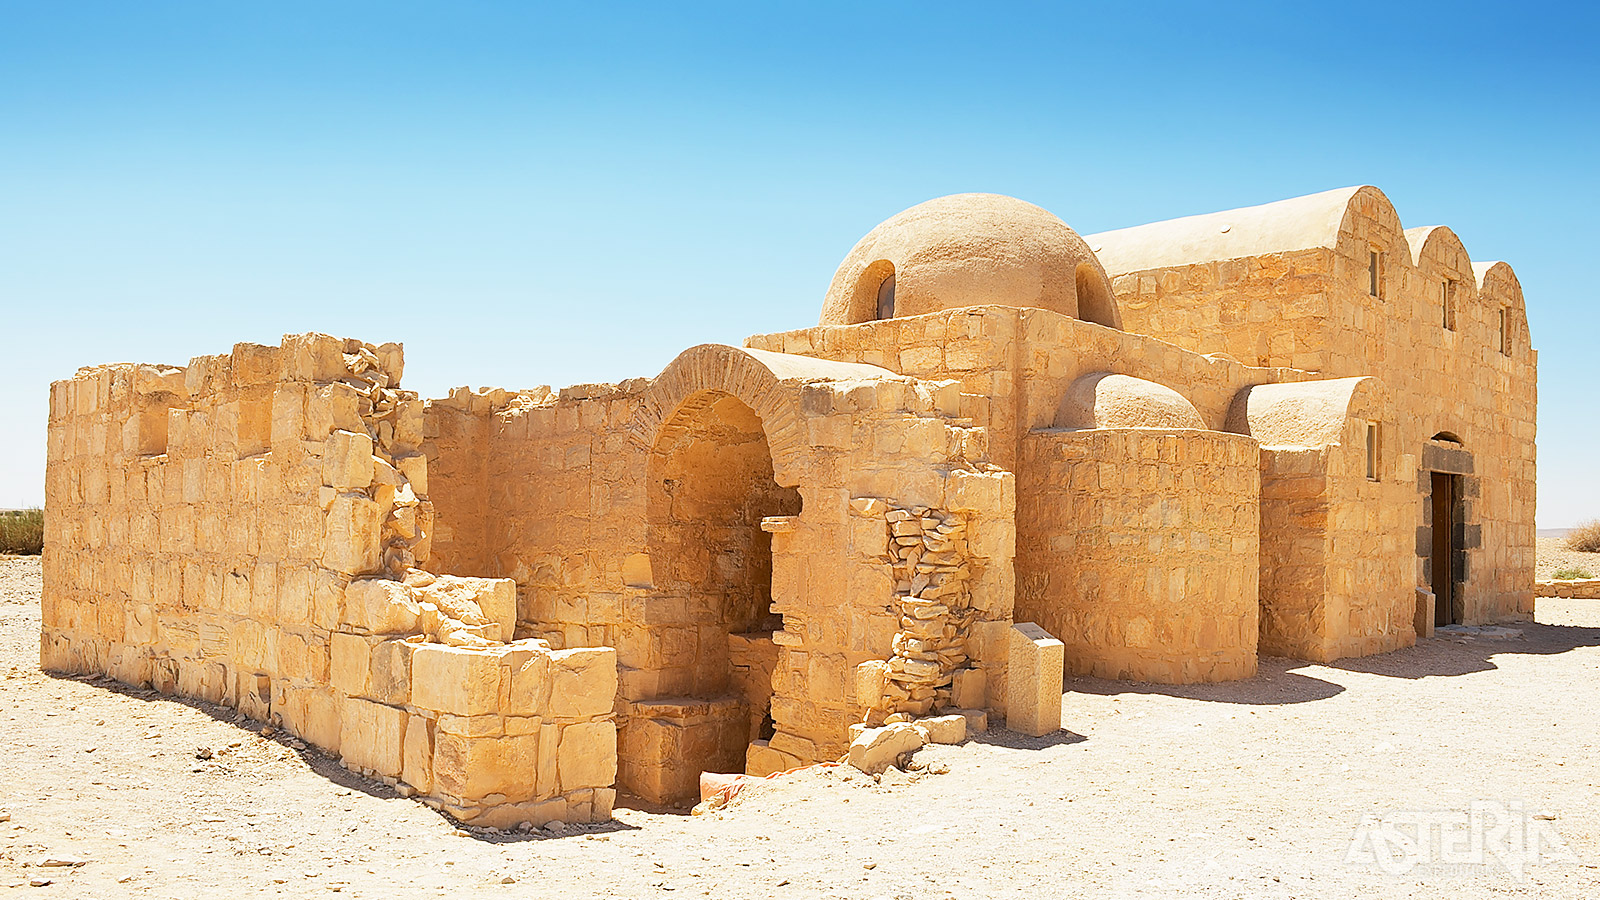 Qasr Amra is een historisch badhuis dat deel uitmaakte van een jachtslot in Jordanië